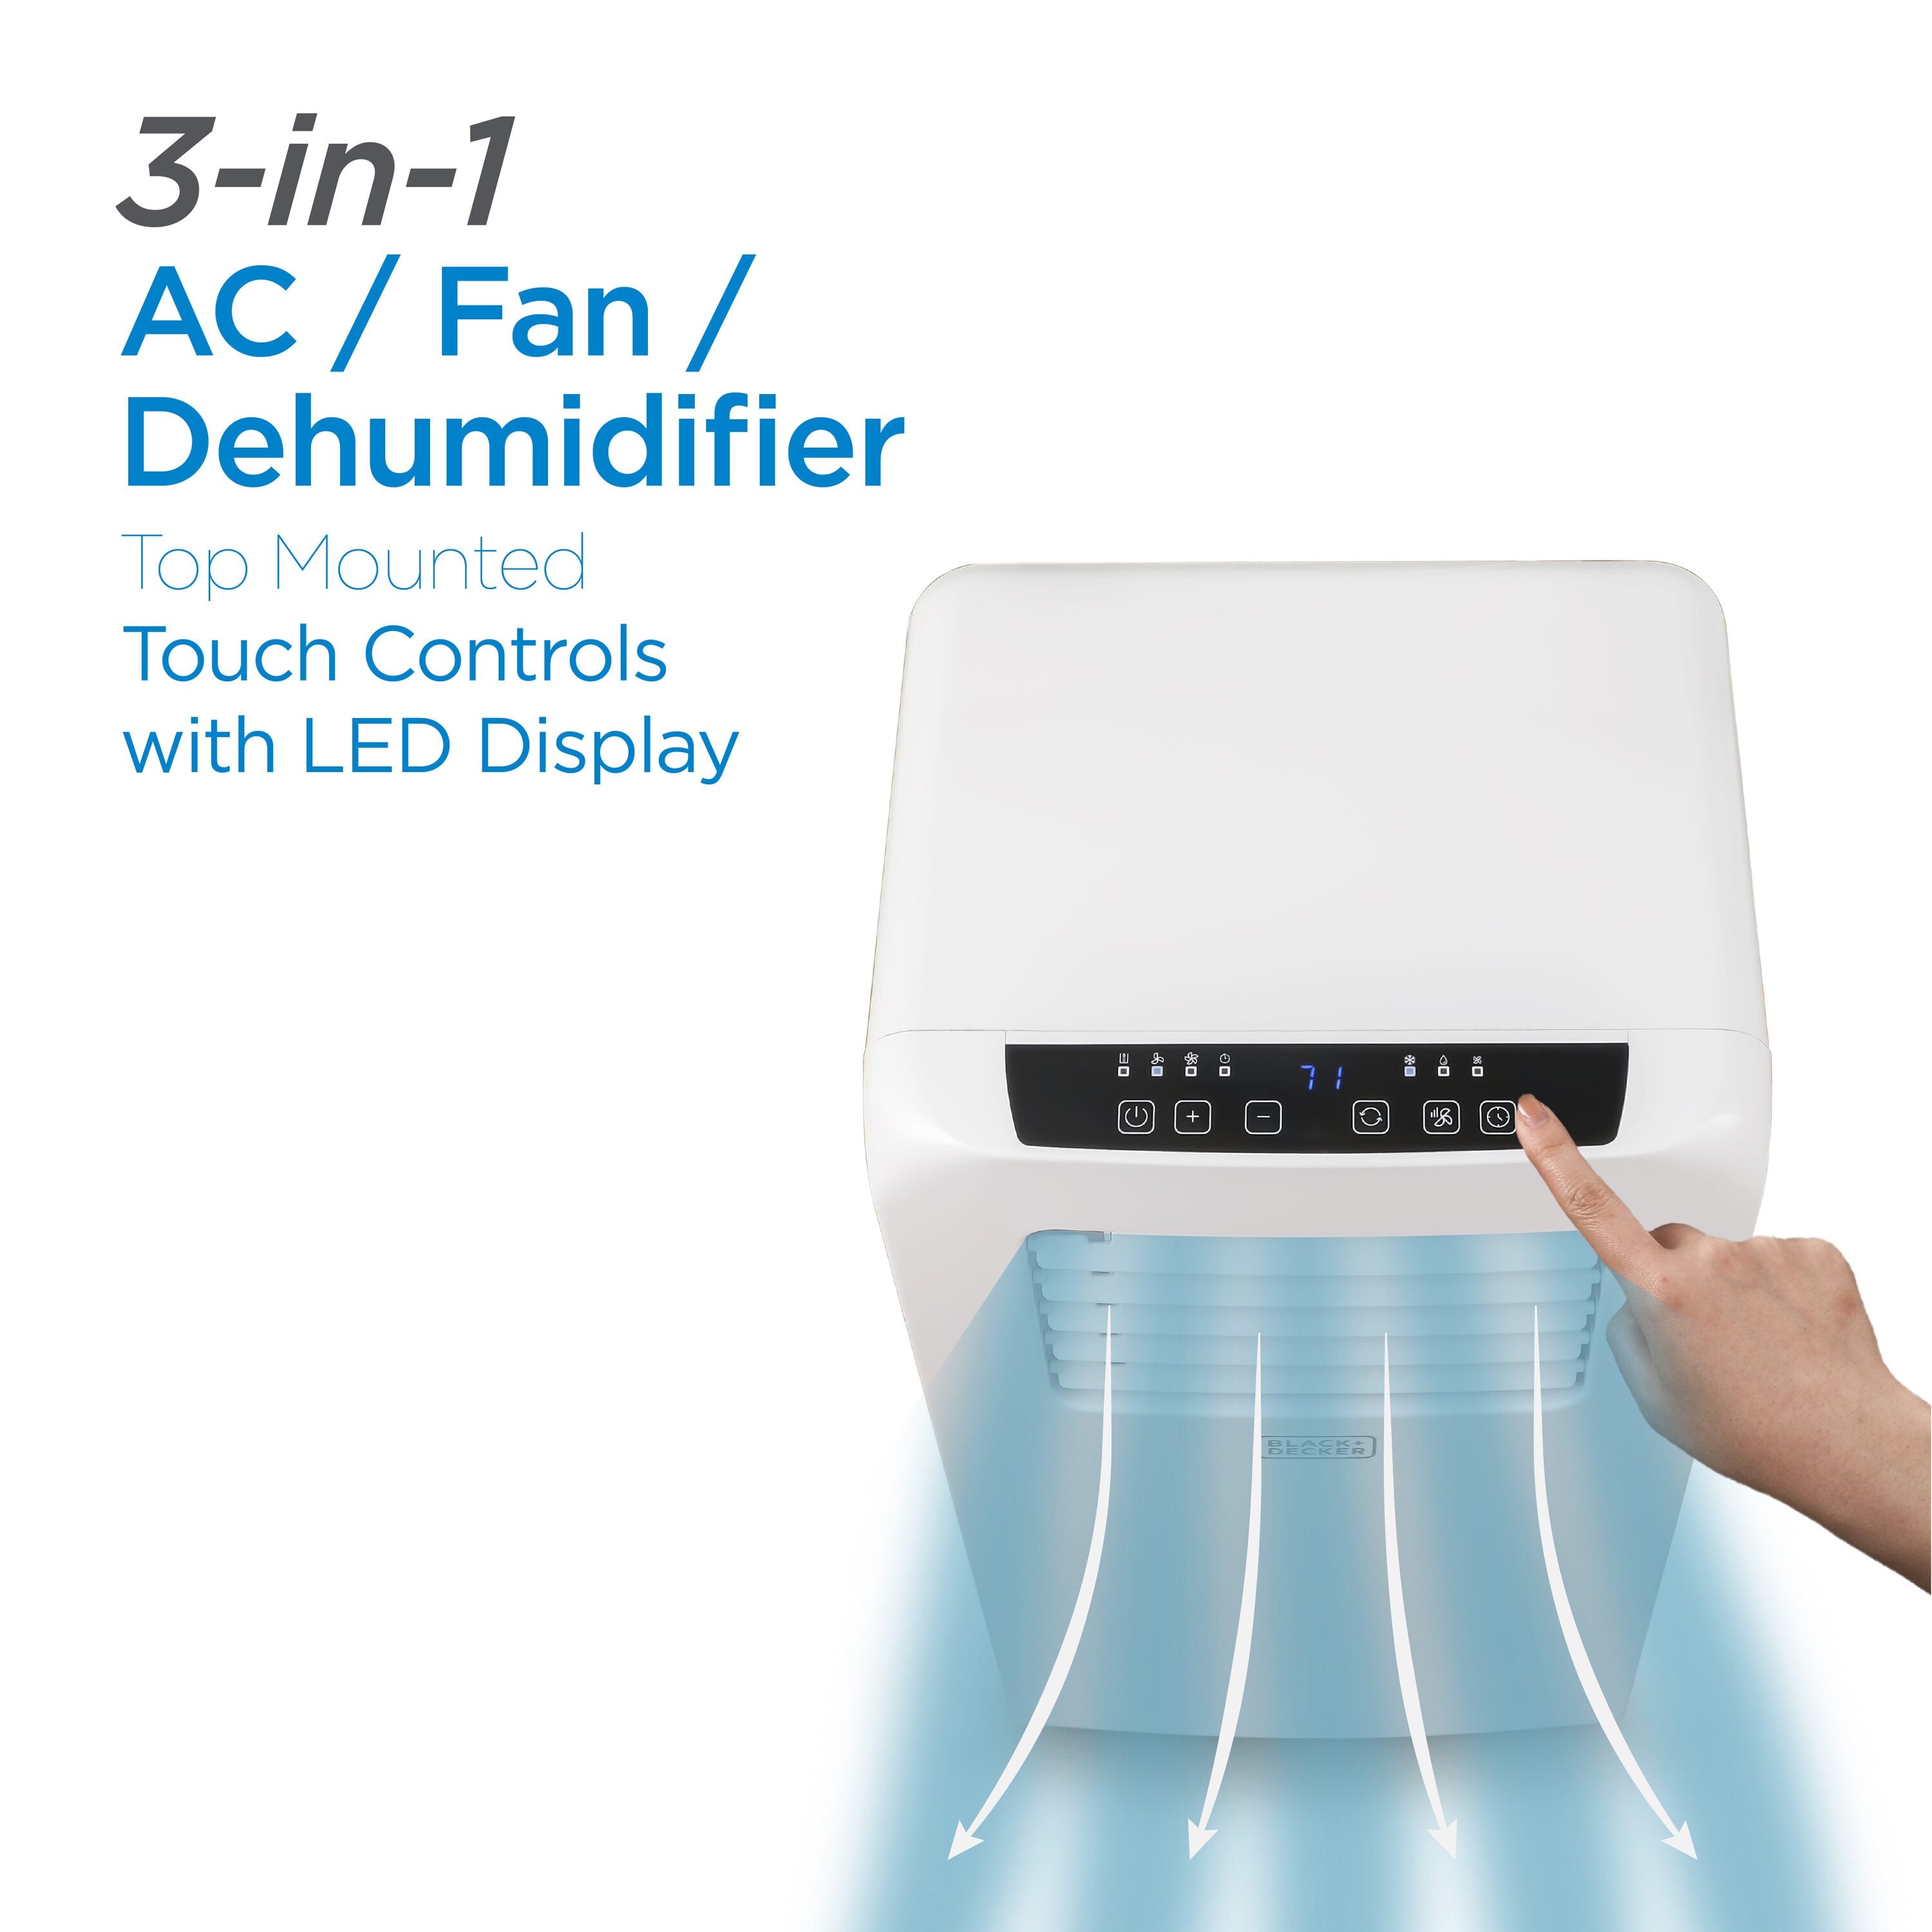 Black & Decker Portable Air Conditioner, 6,000 BTU, White - Yahoo Shopping